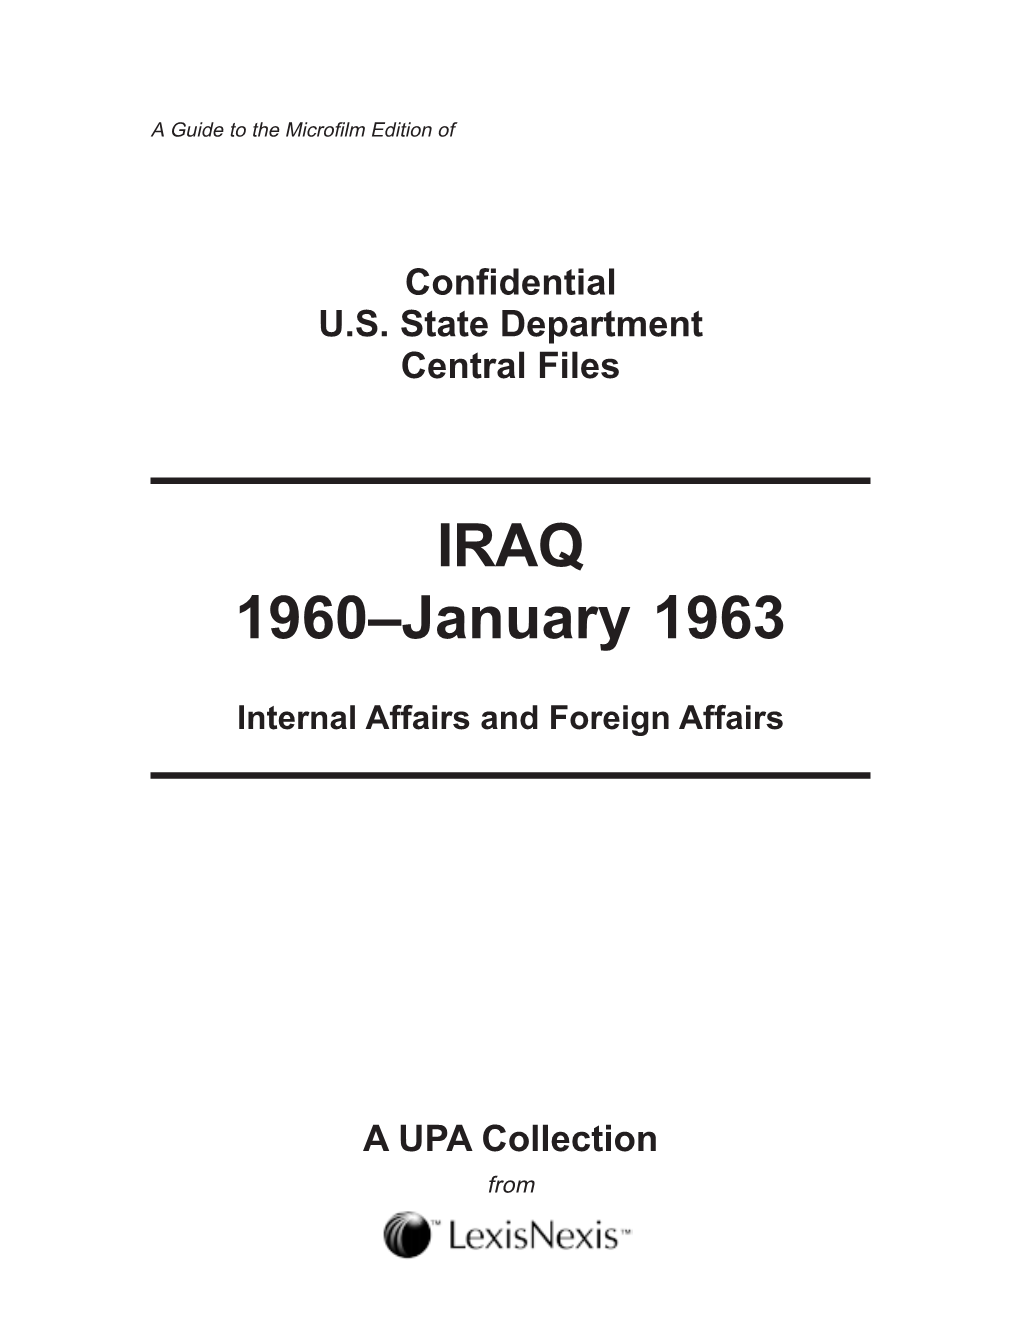 IRAQ 1960–January 1963